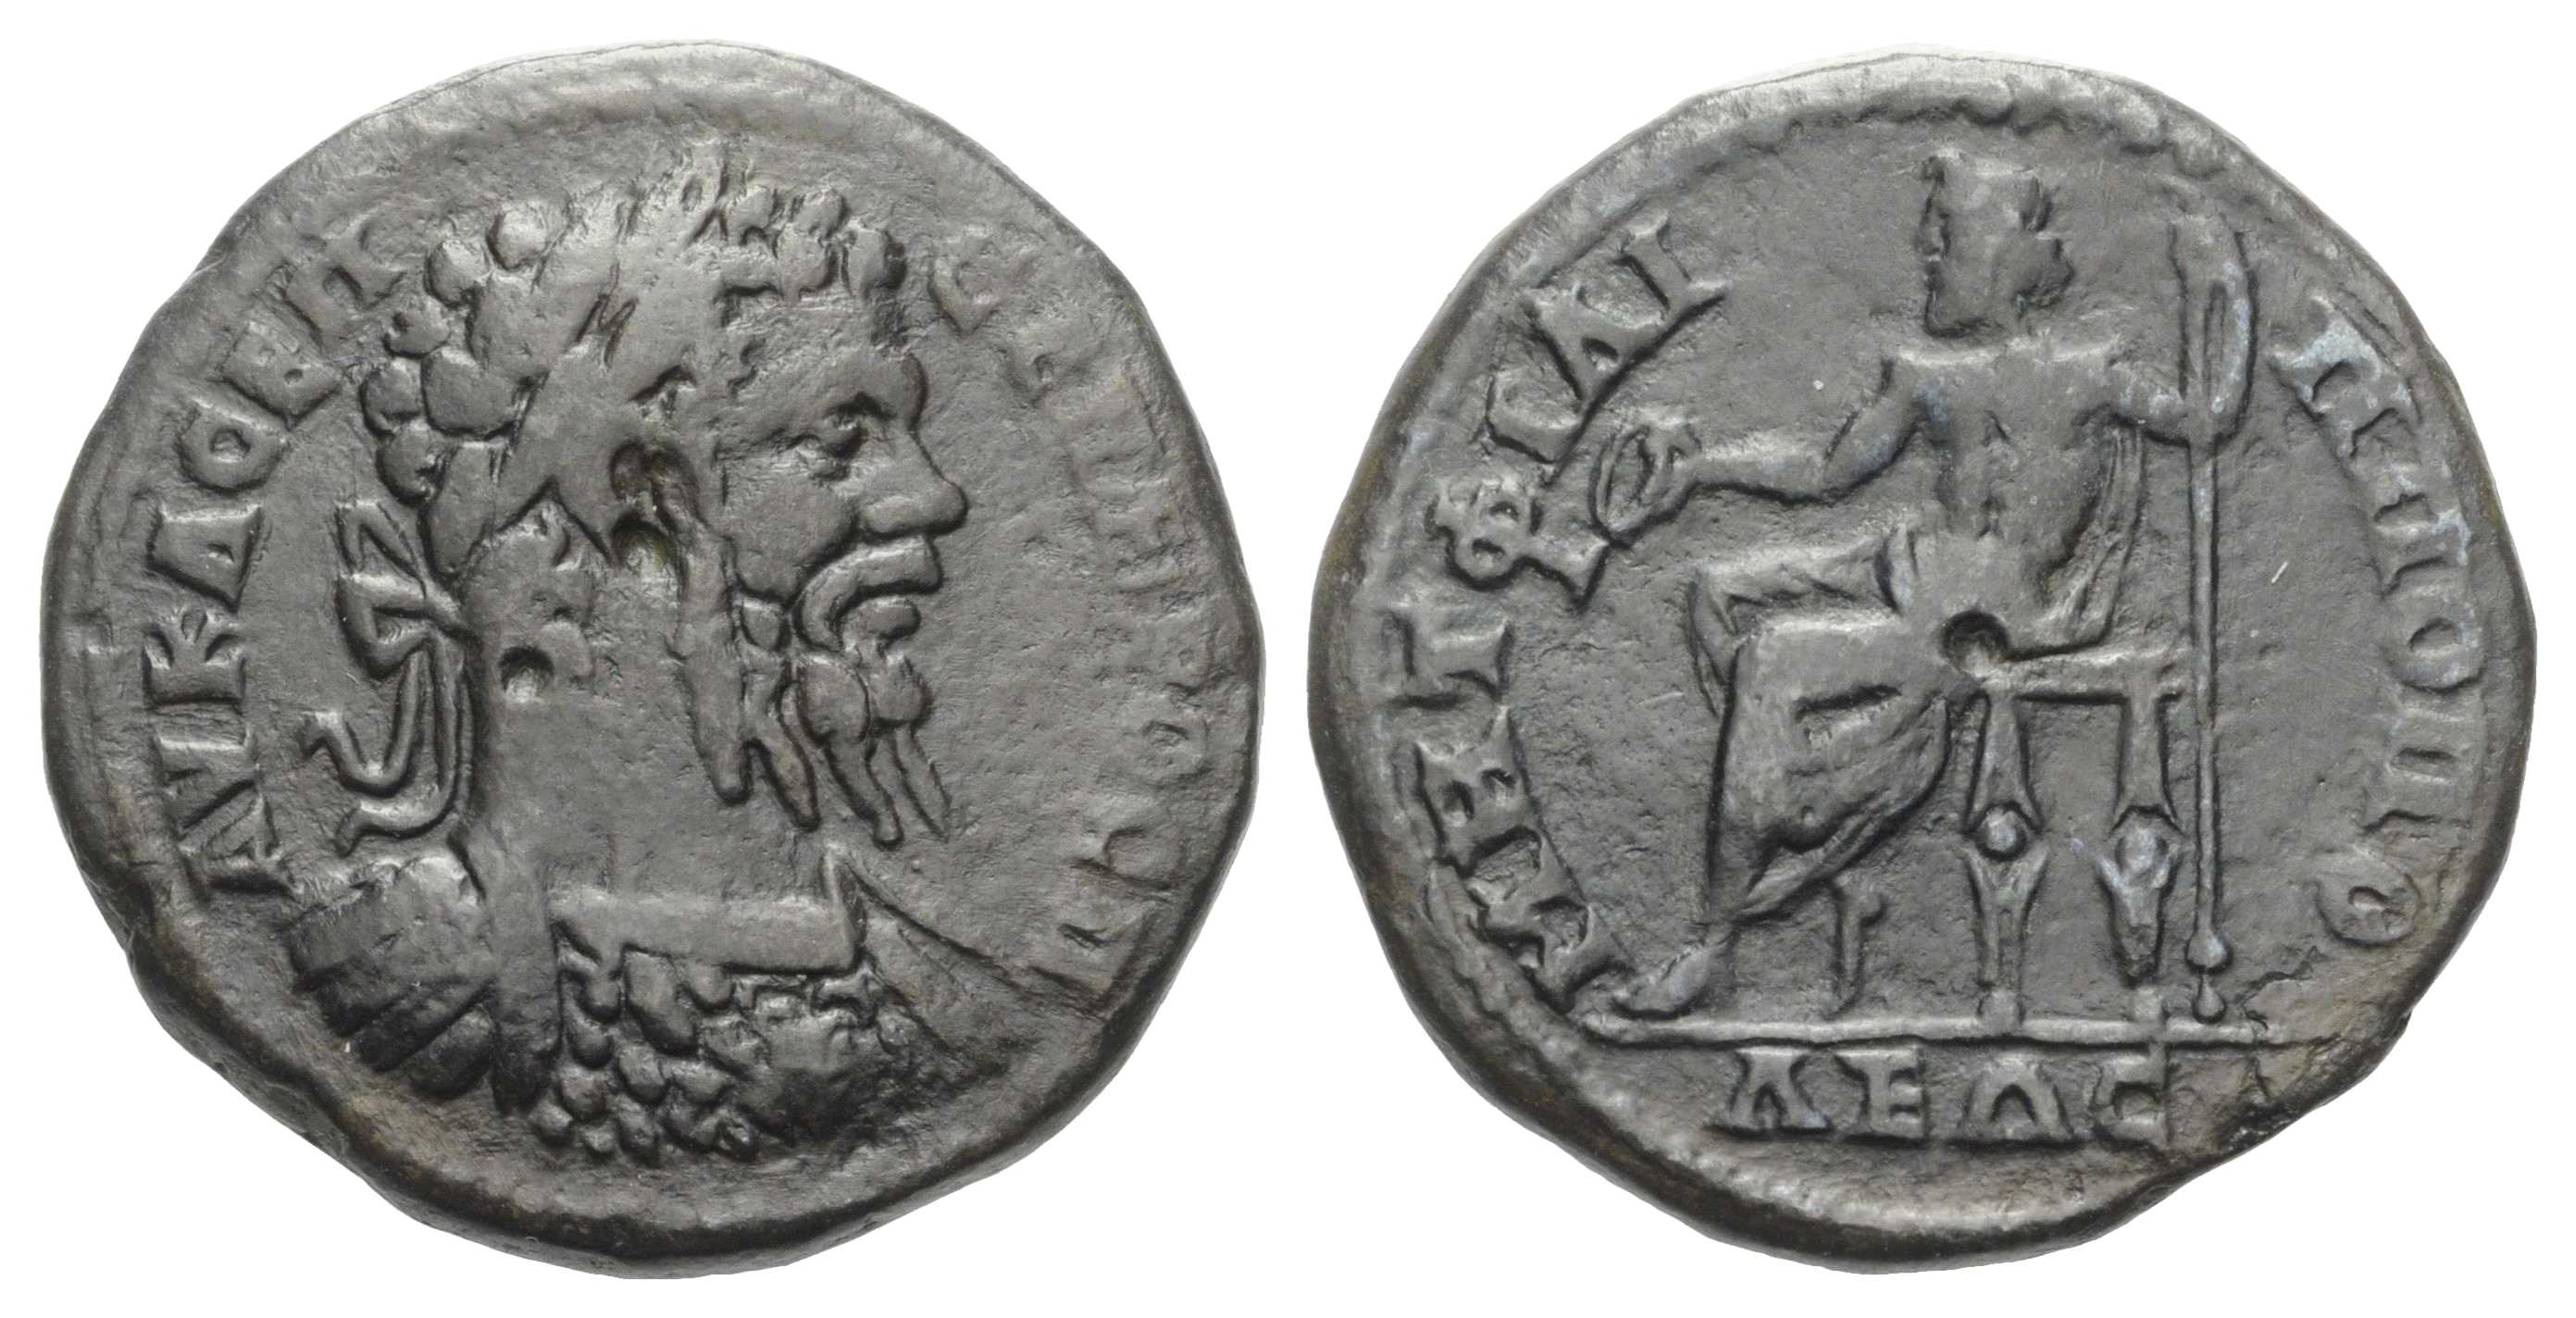 6767 Philippopolis Thracia Septimius Severus AE